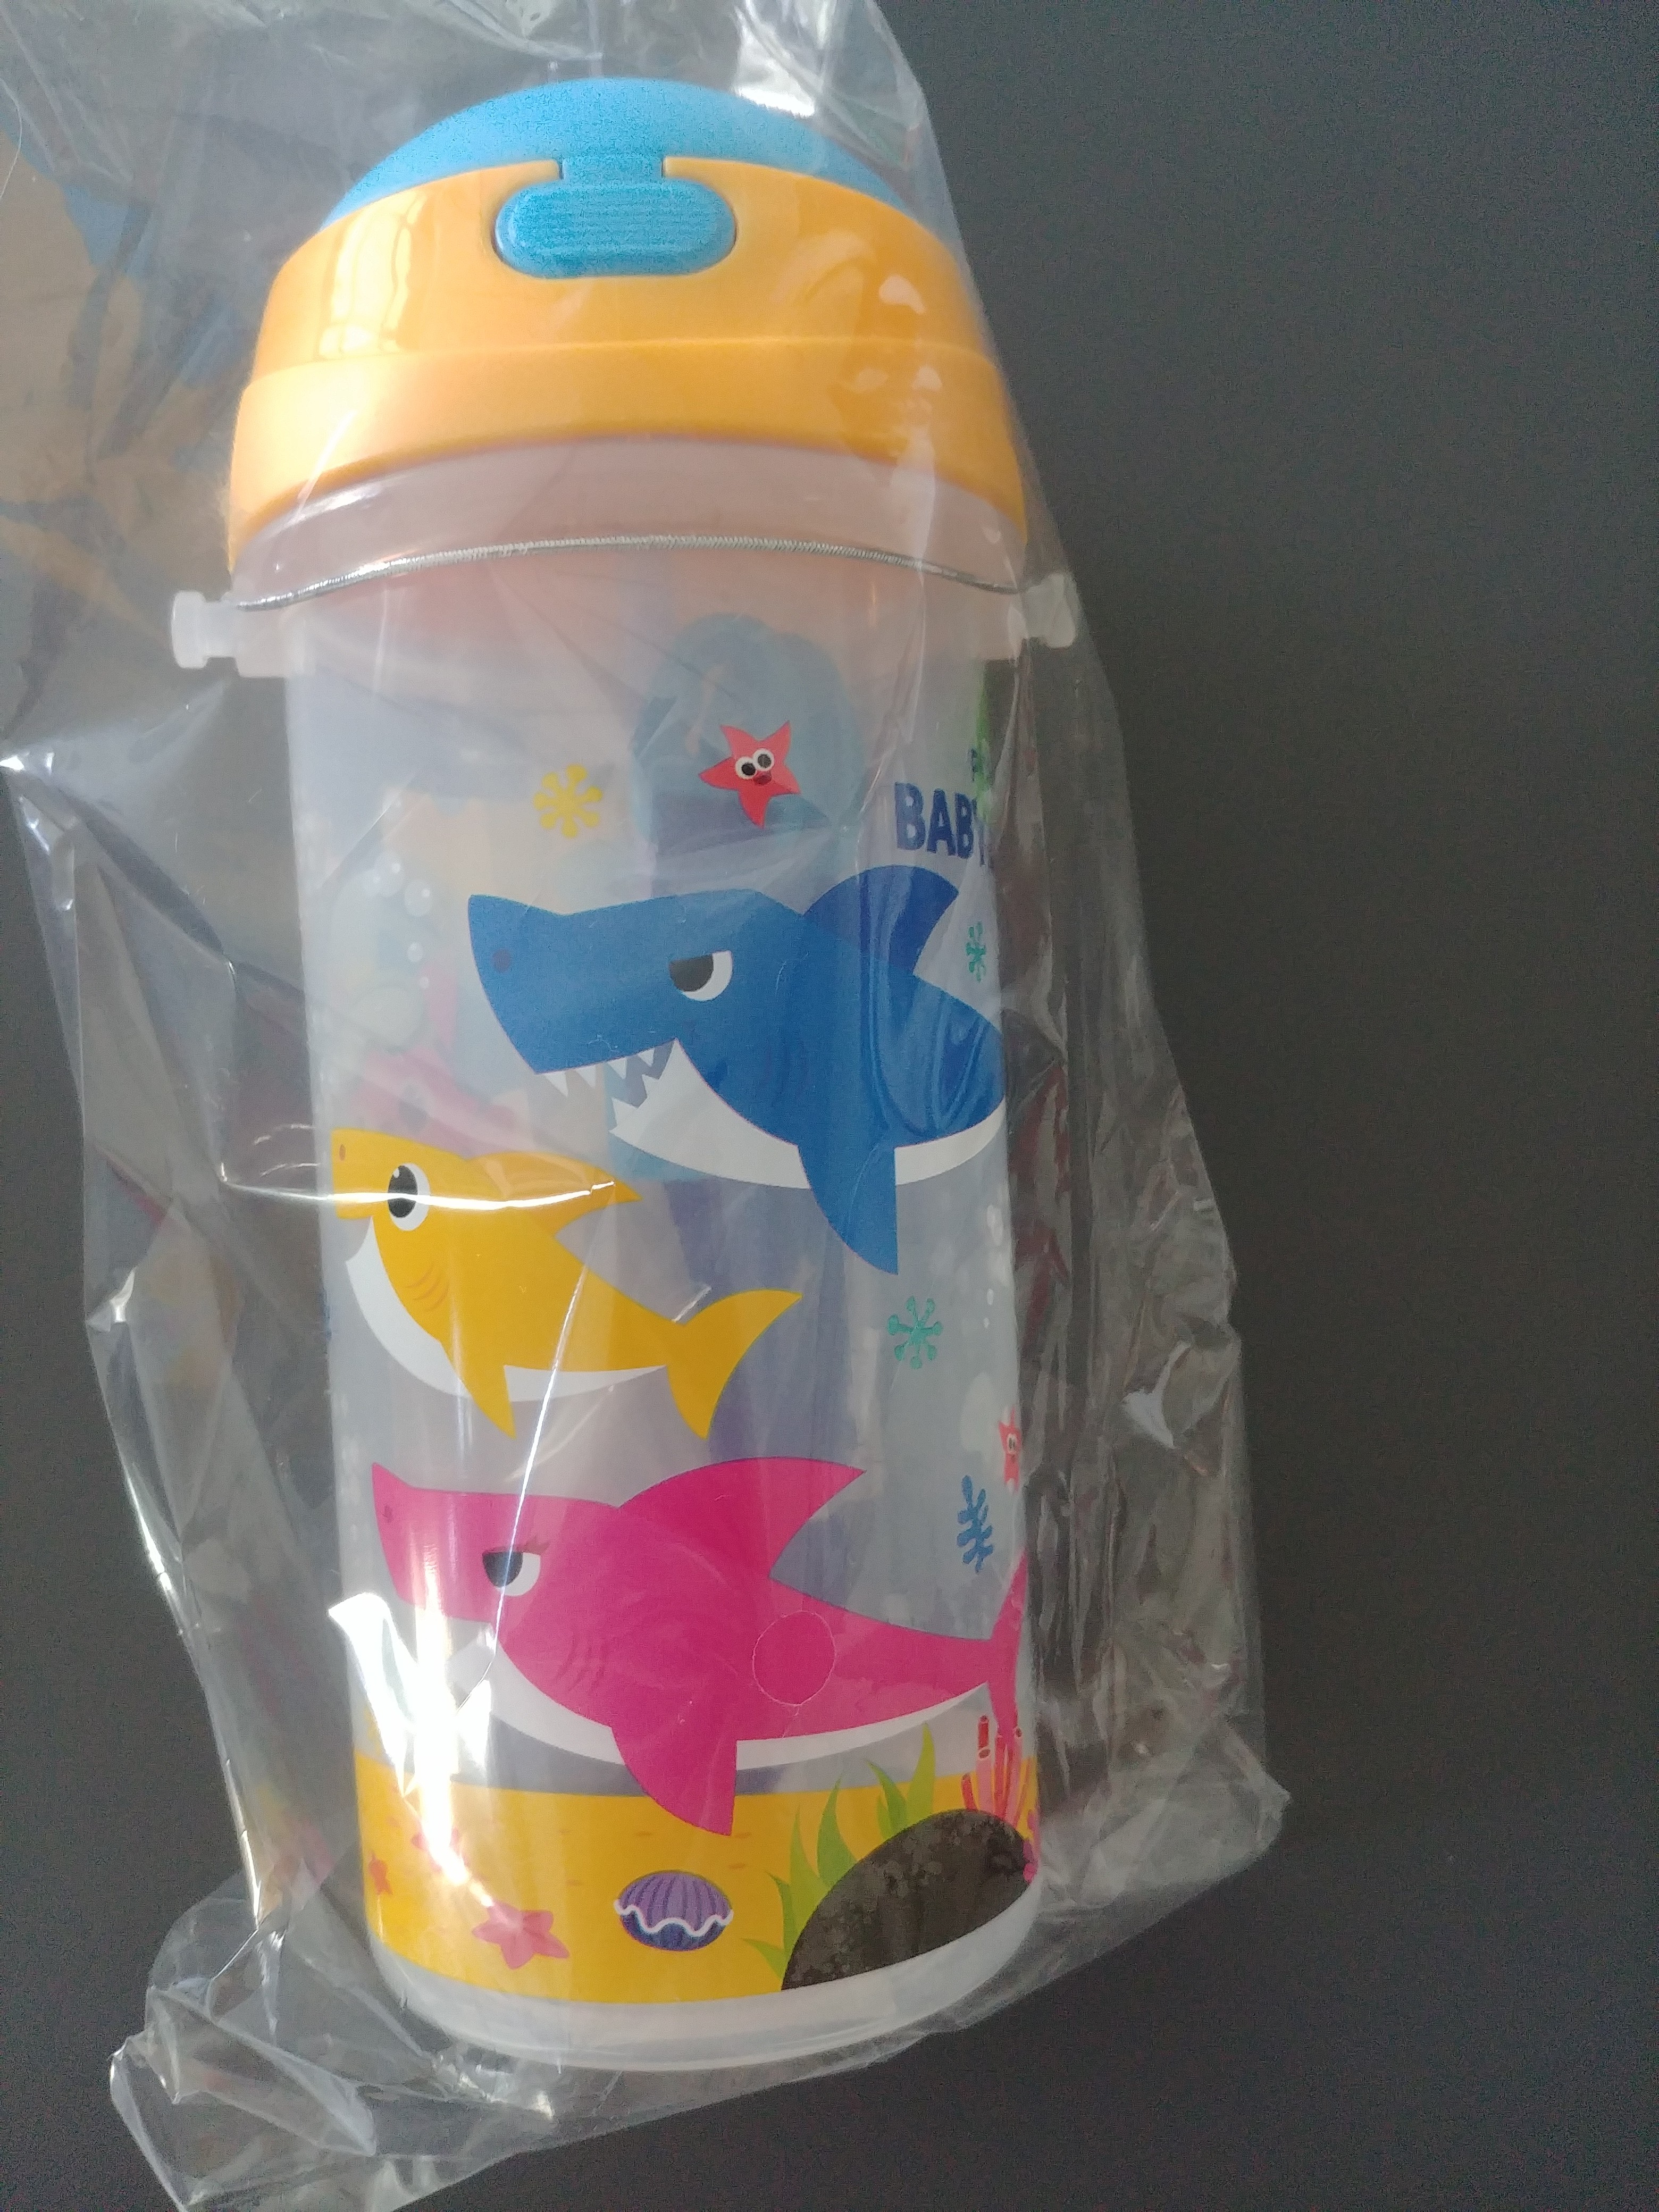 Xiong Dahe Pingpengfox Baby Shark Children's Water Bottle